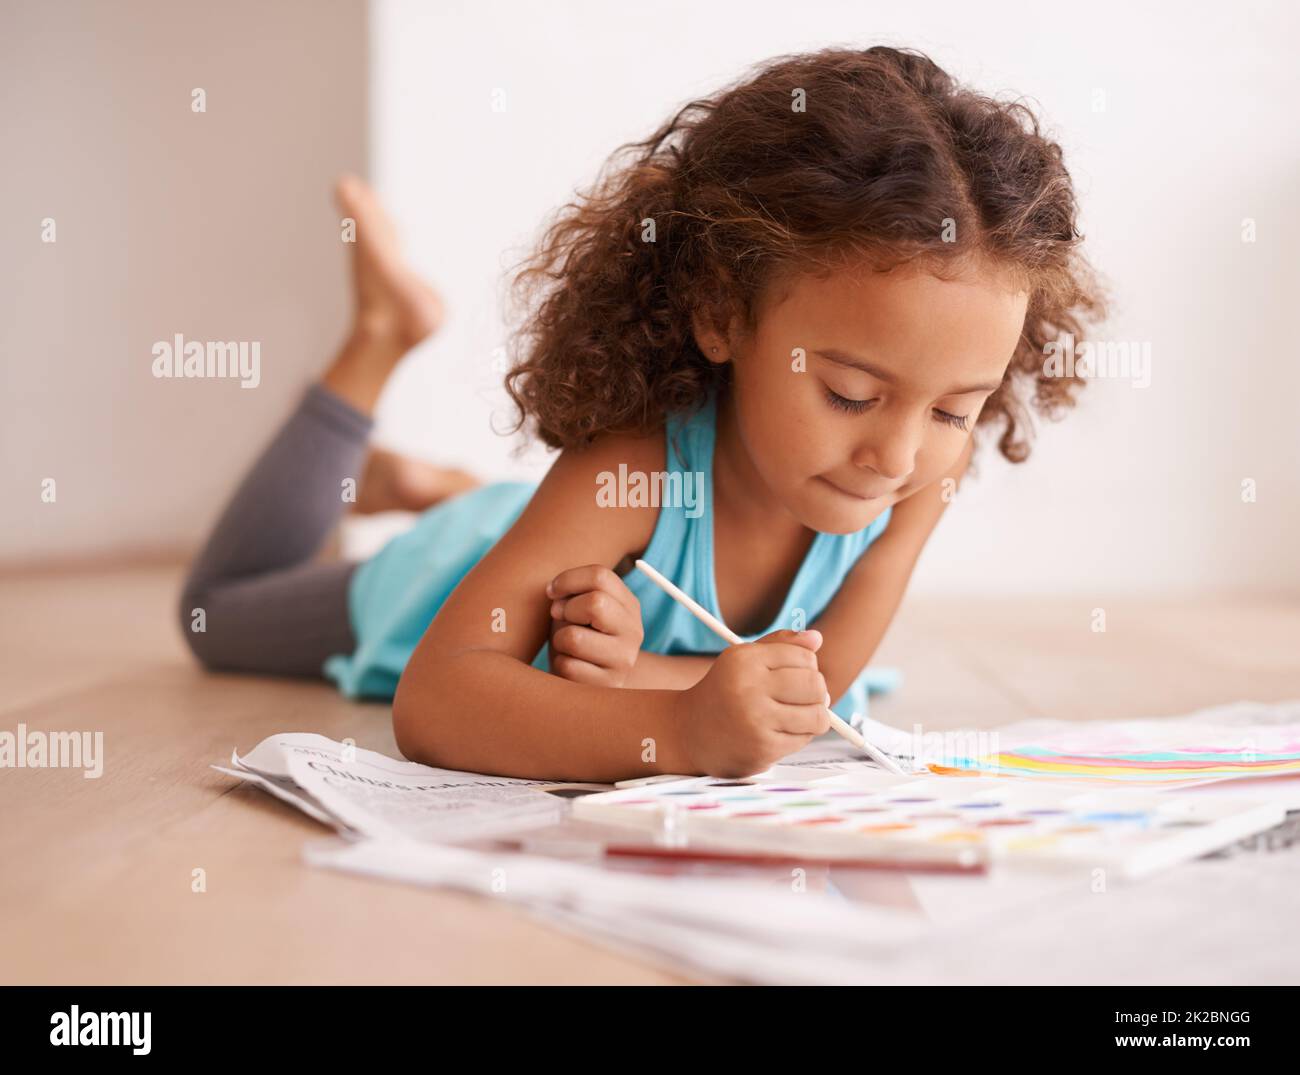 Un artiste en train de faire. Photo d'une petite fille couchée sur le sol et peignant une photo. Banque D'Images